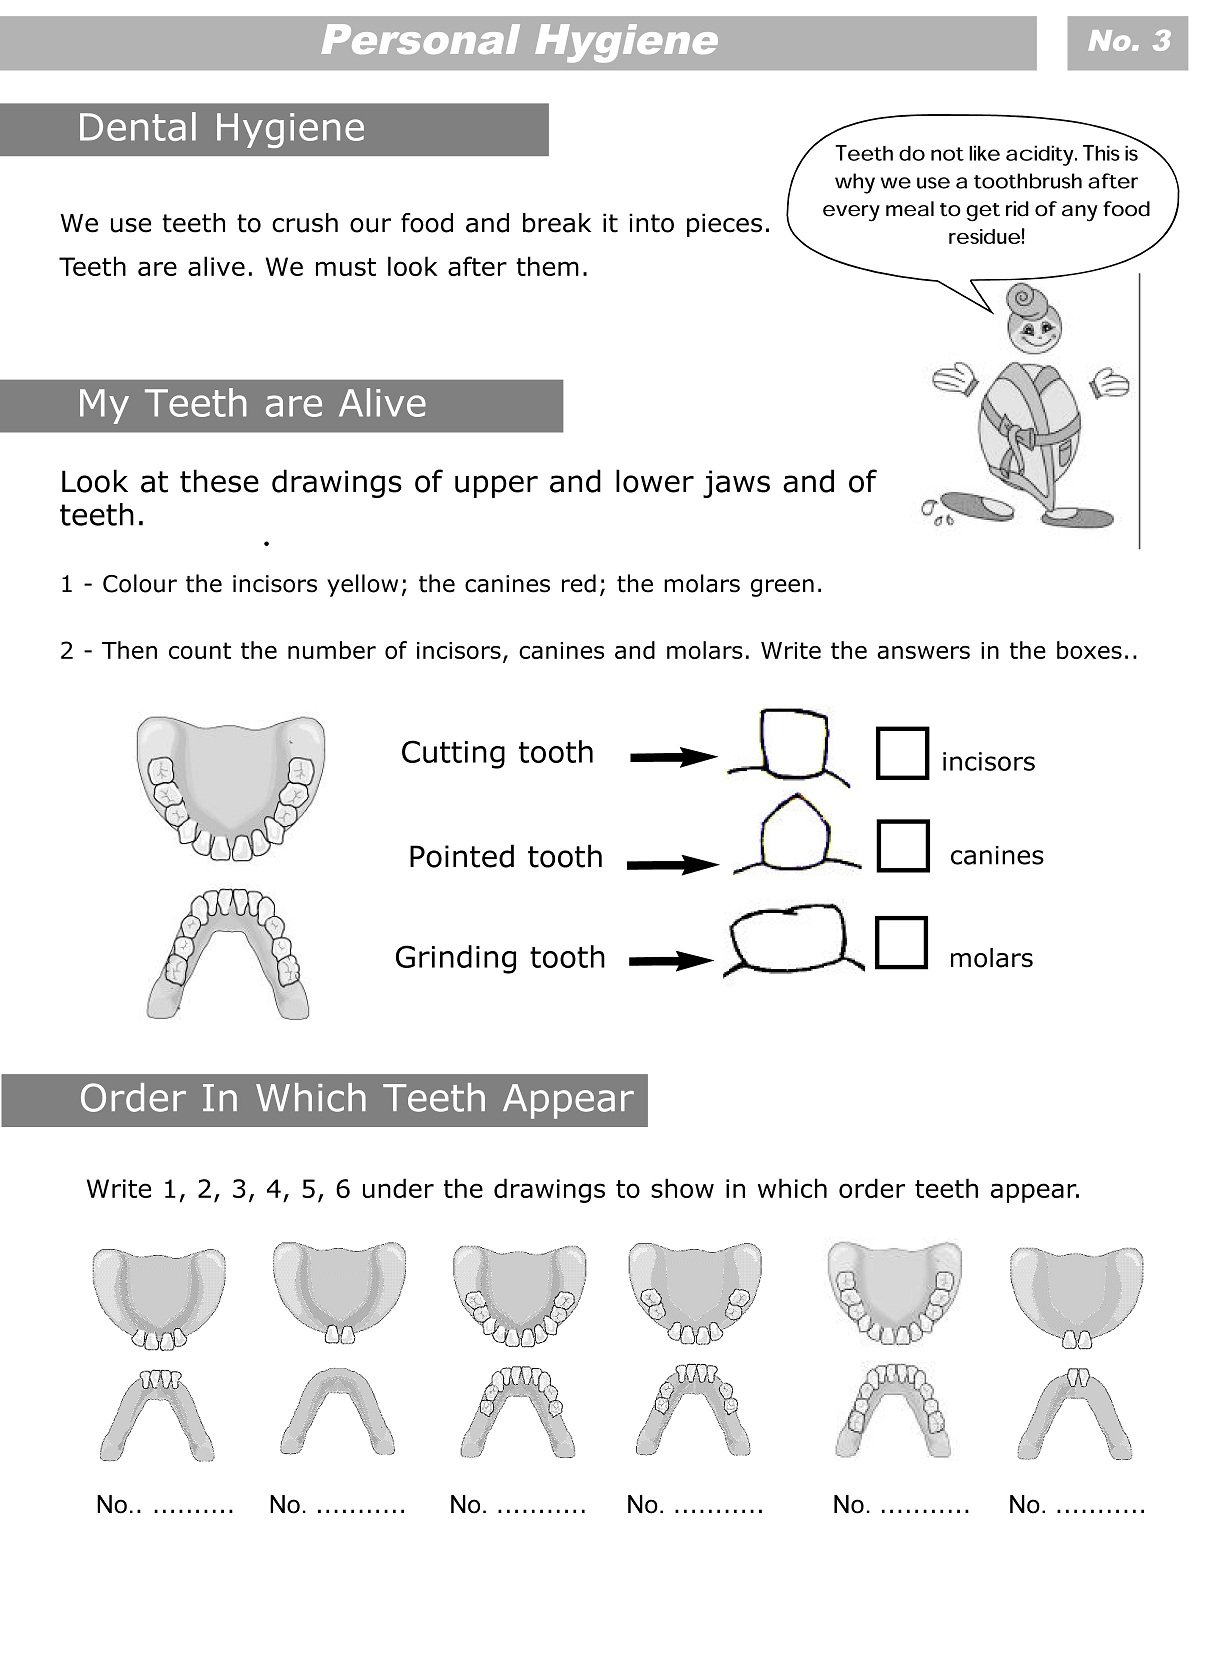 Personal Hygiene Worksheets For Kids Level 2  Personal Hygiene With Free Printable Personal Hygiene Worksheets